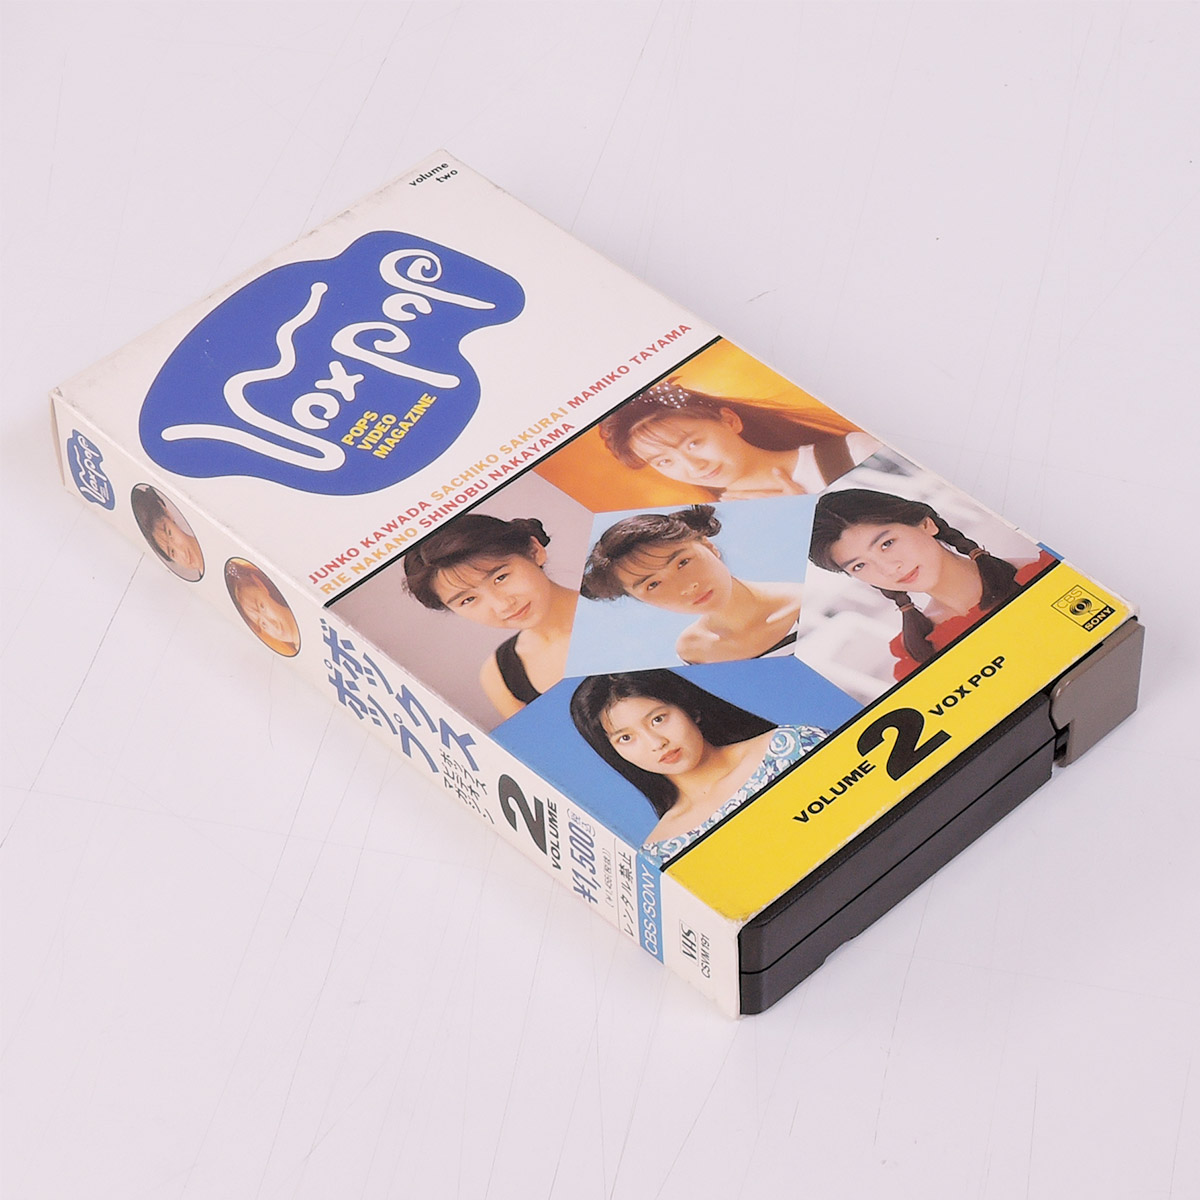 VHSです ボックスポップ ポップスビデオマガジン VOLUME2 河田純子